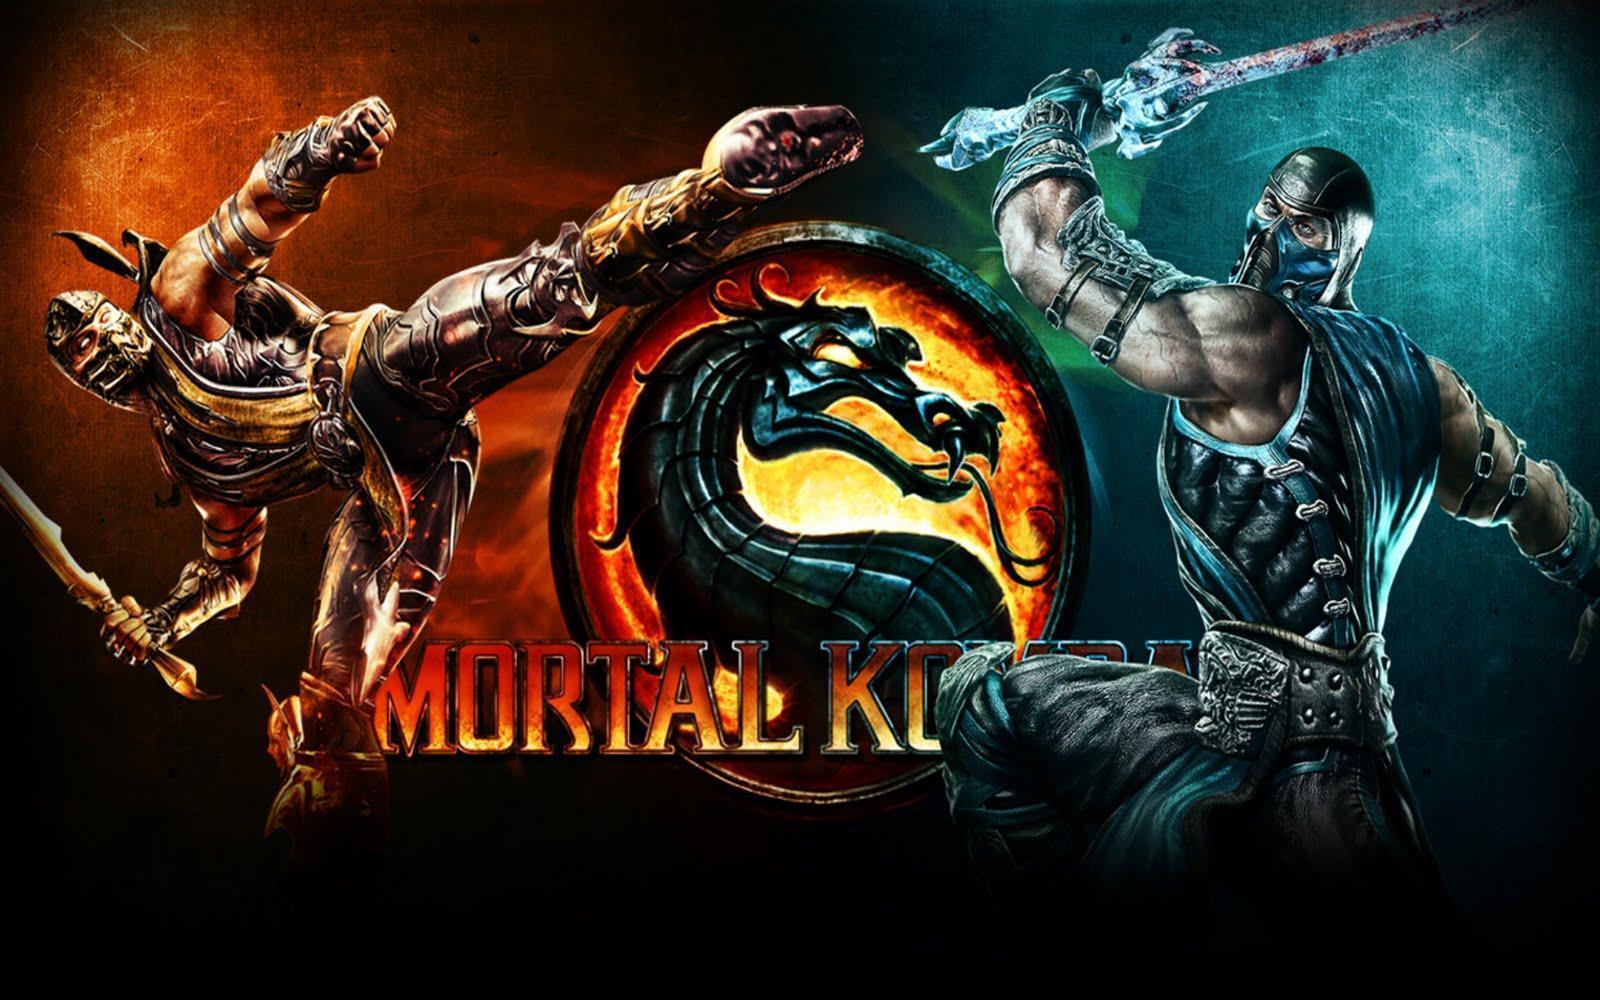 Wallpaper de Mortal kombat 9!